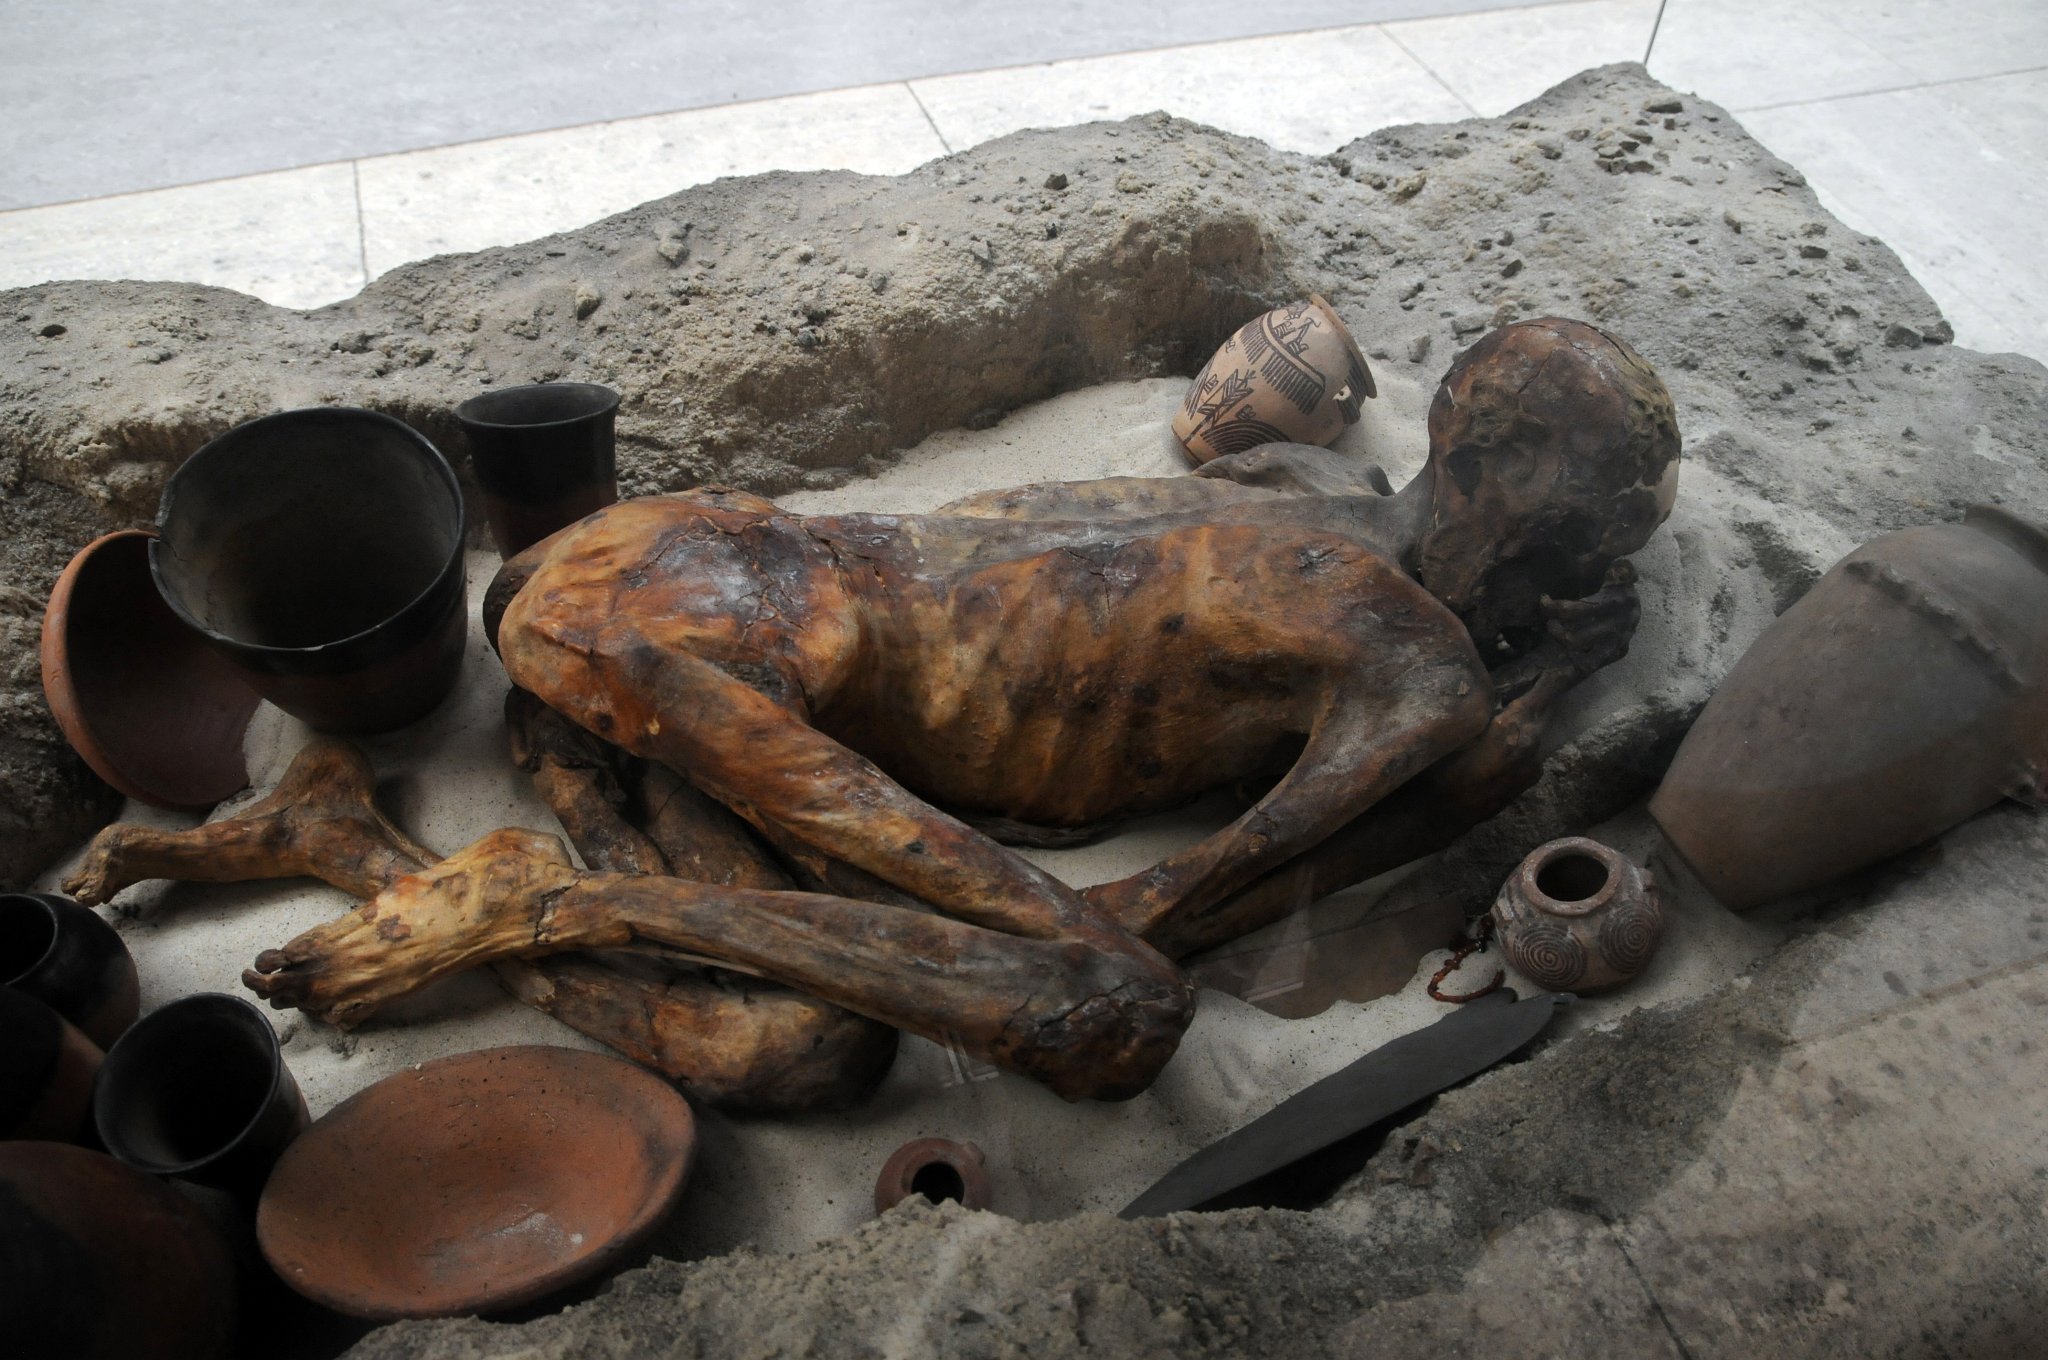 DSC_5890_2.jpg - Typický egyptský hrob obsahující přírodní zachovalé tělo muže se sbírkou pohřebních předmětů. Okolo 3400 před naším letopočtem.